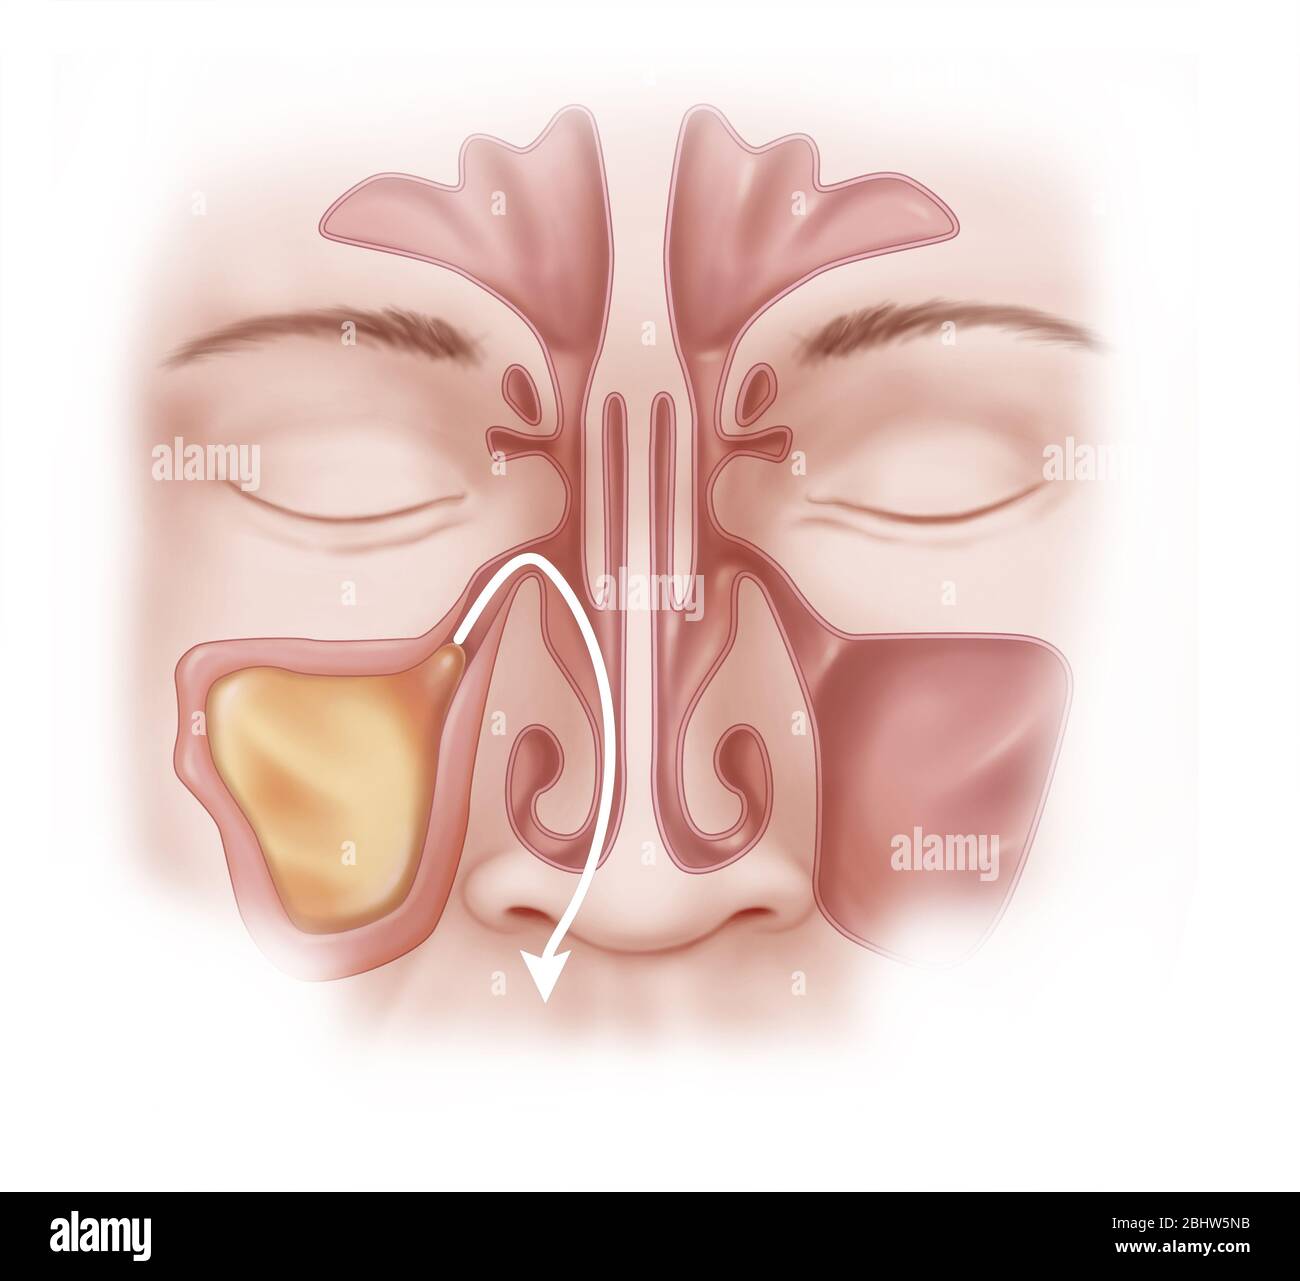 Sinusitis der rechten Kieferhöhle. Die Sinus ist mit Schleim gefüllt und  die Wand ist entzündet und verdickt. Die verschiedenen para-Nasennebenhöhlen  sind al Stockfotografie - Alamy